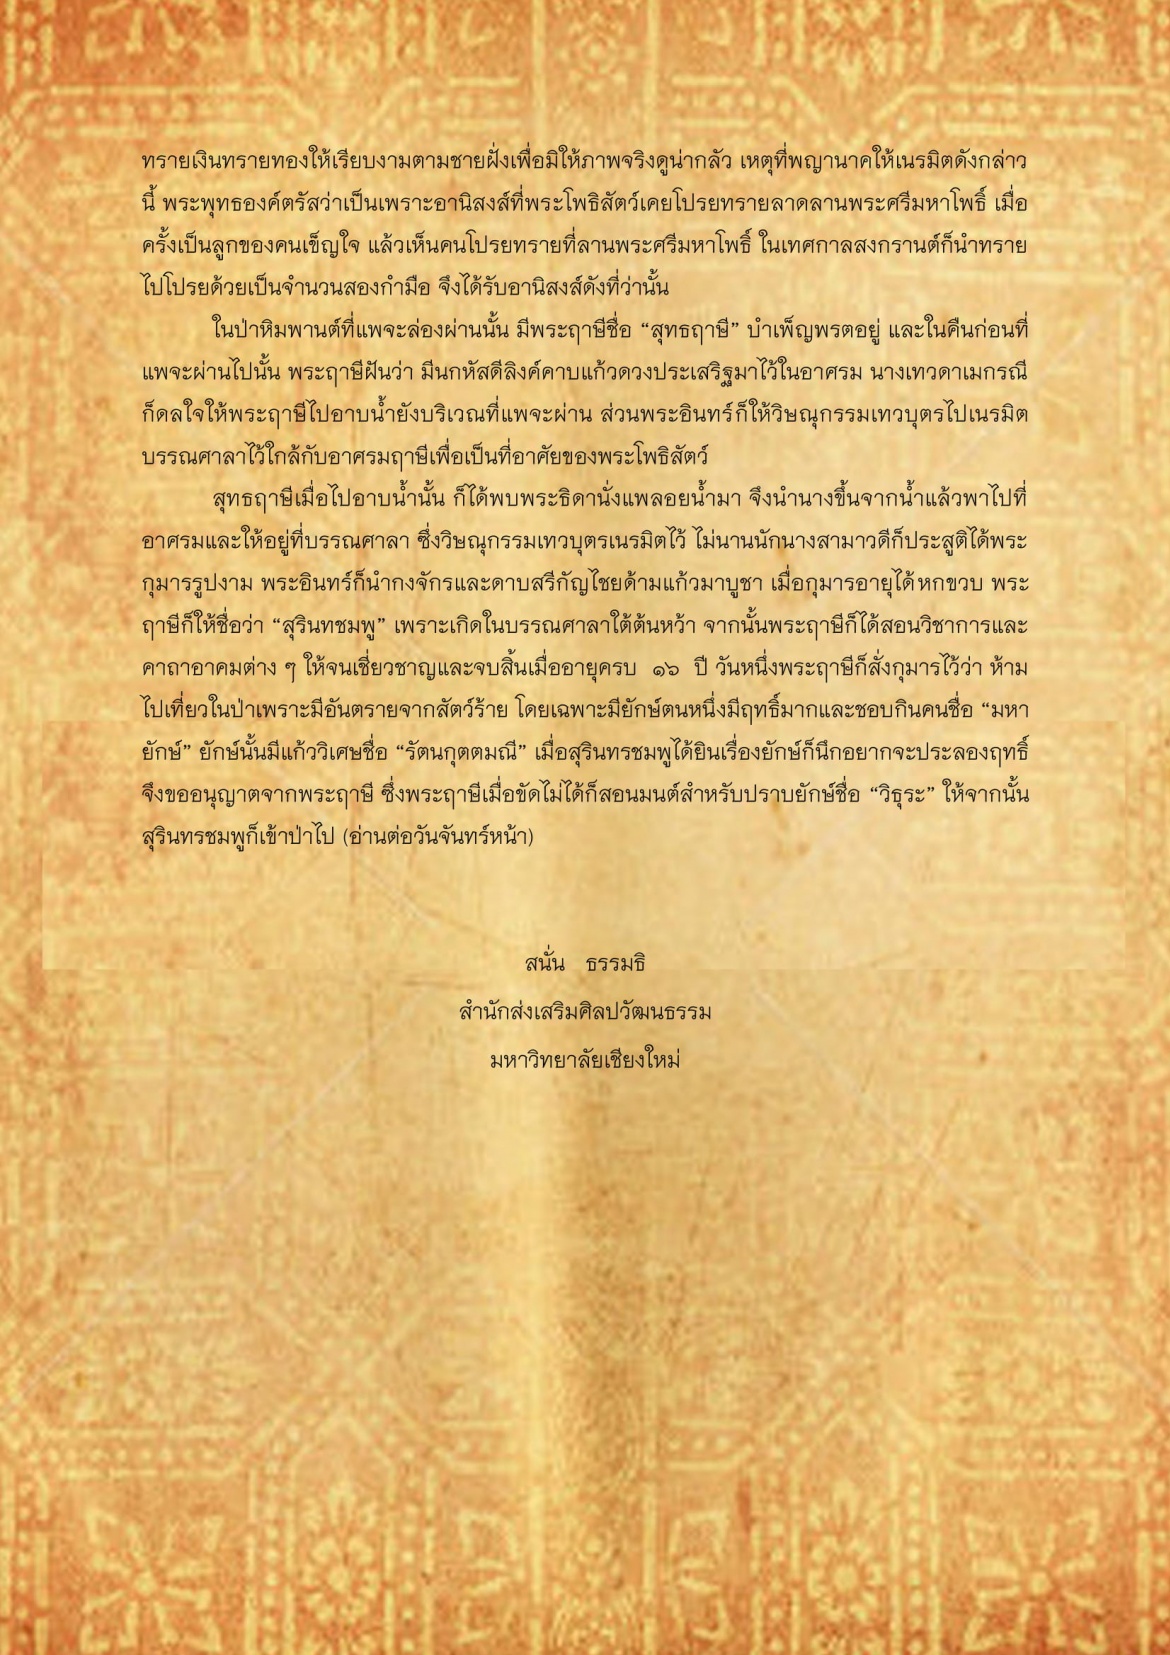 สุรินทชมพู(1) - 24 เมษายน 2560